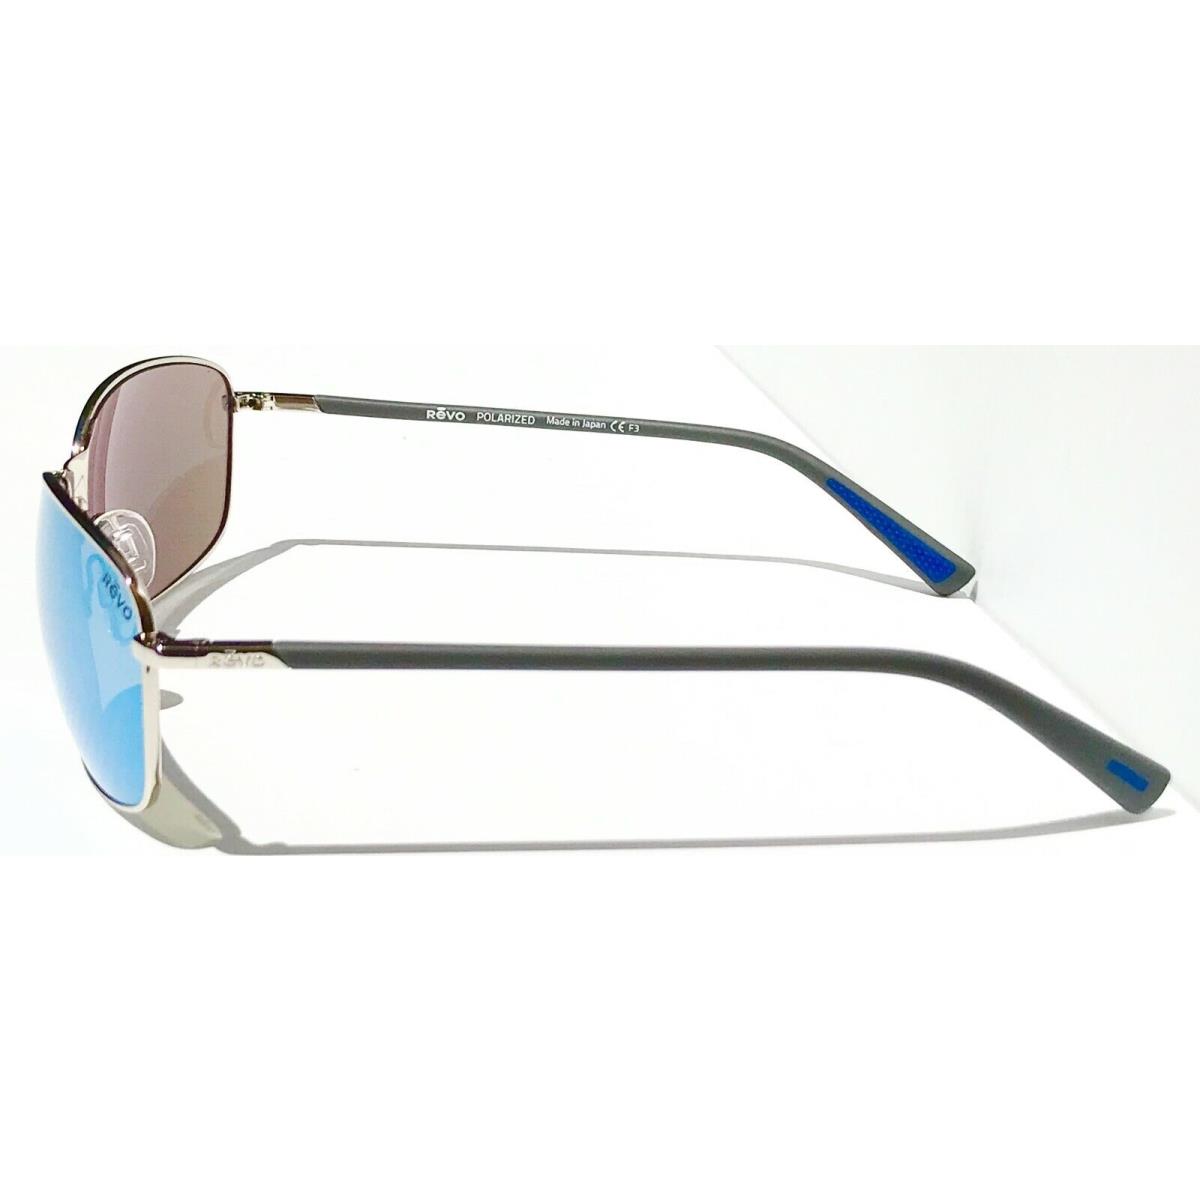 Revo sunglasses Decoy - Silver Frame, Blue Lens